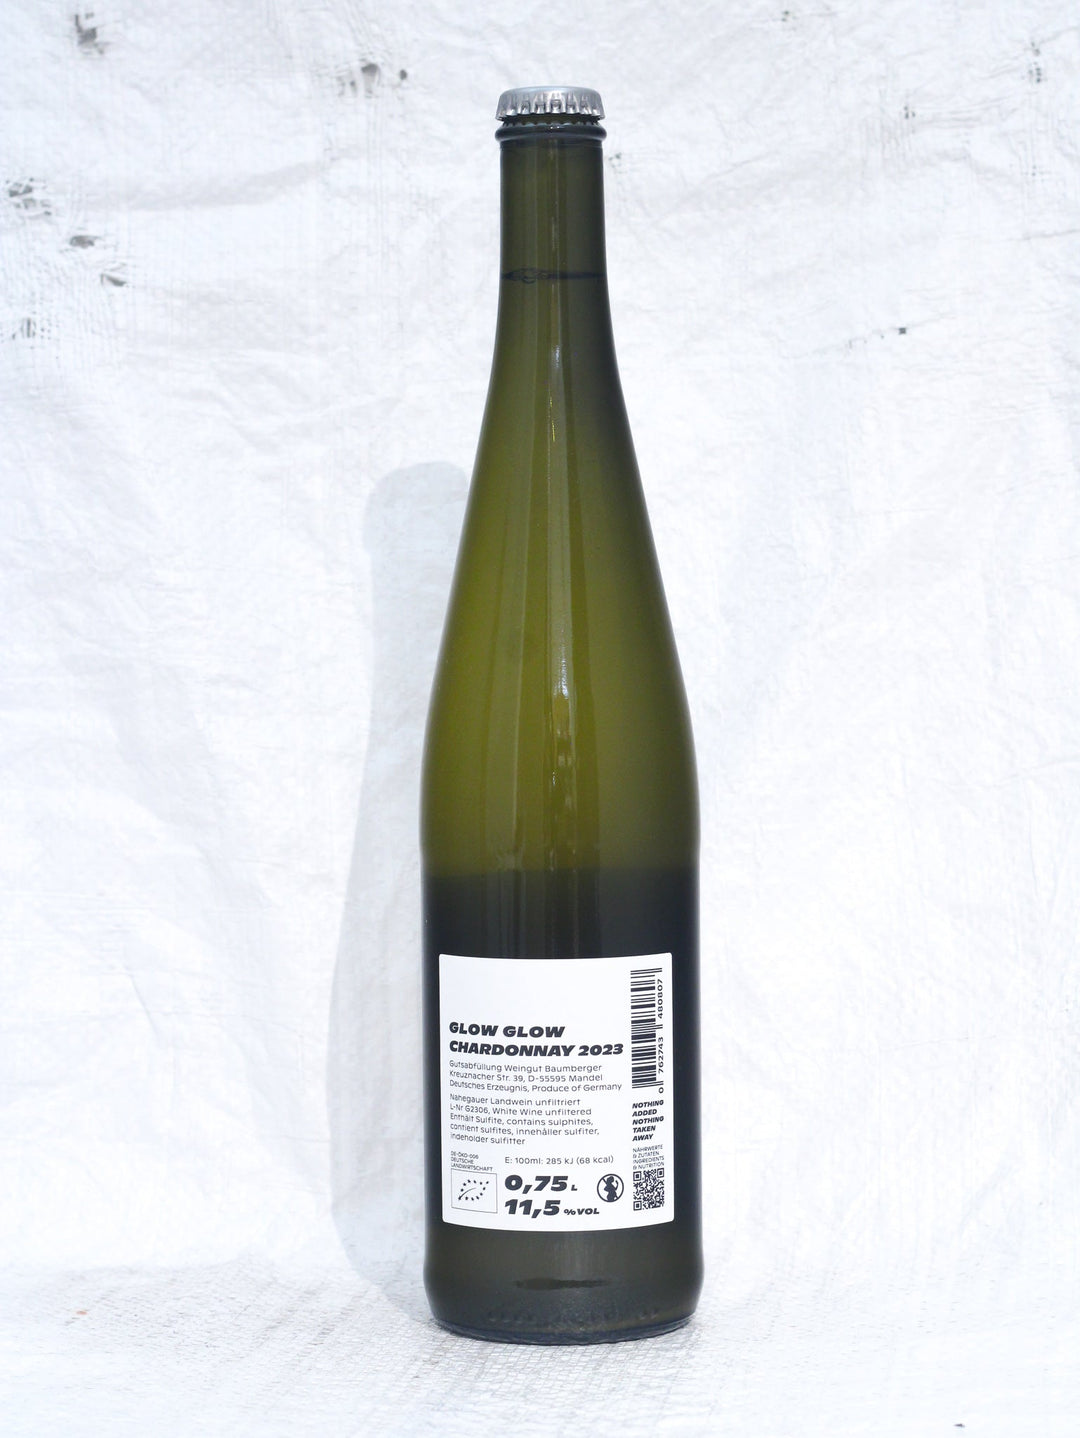 Chardonnay 2023 0,75L Wein von Glow Glow